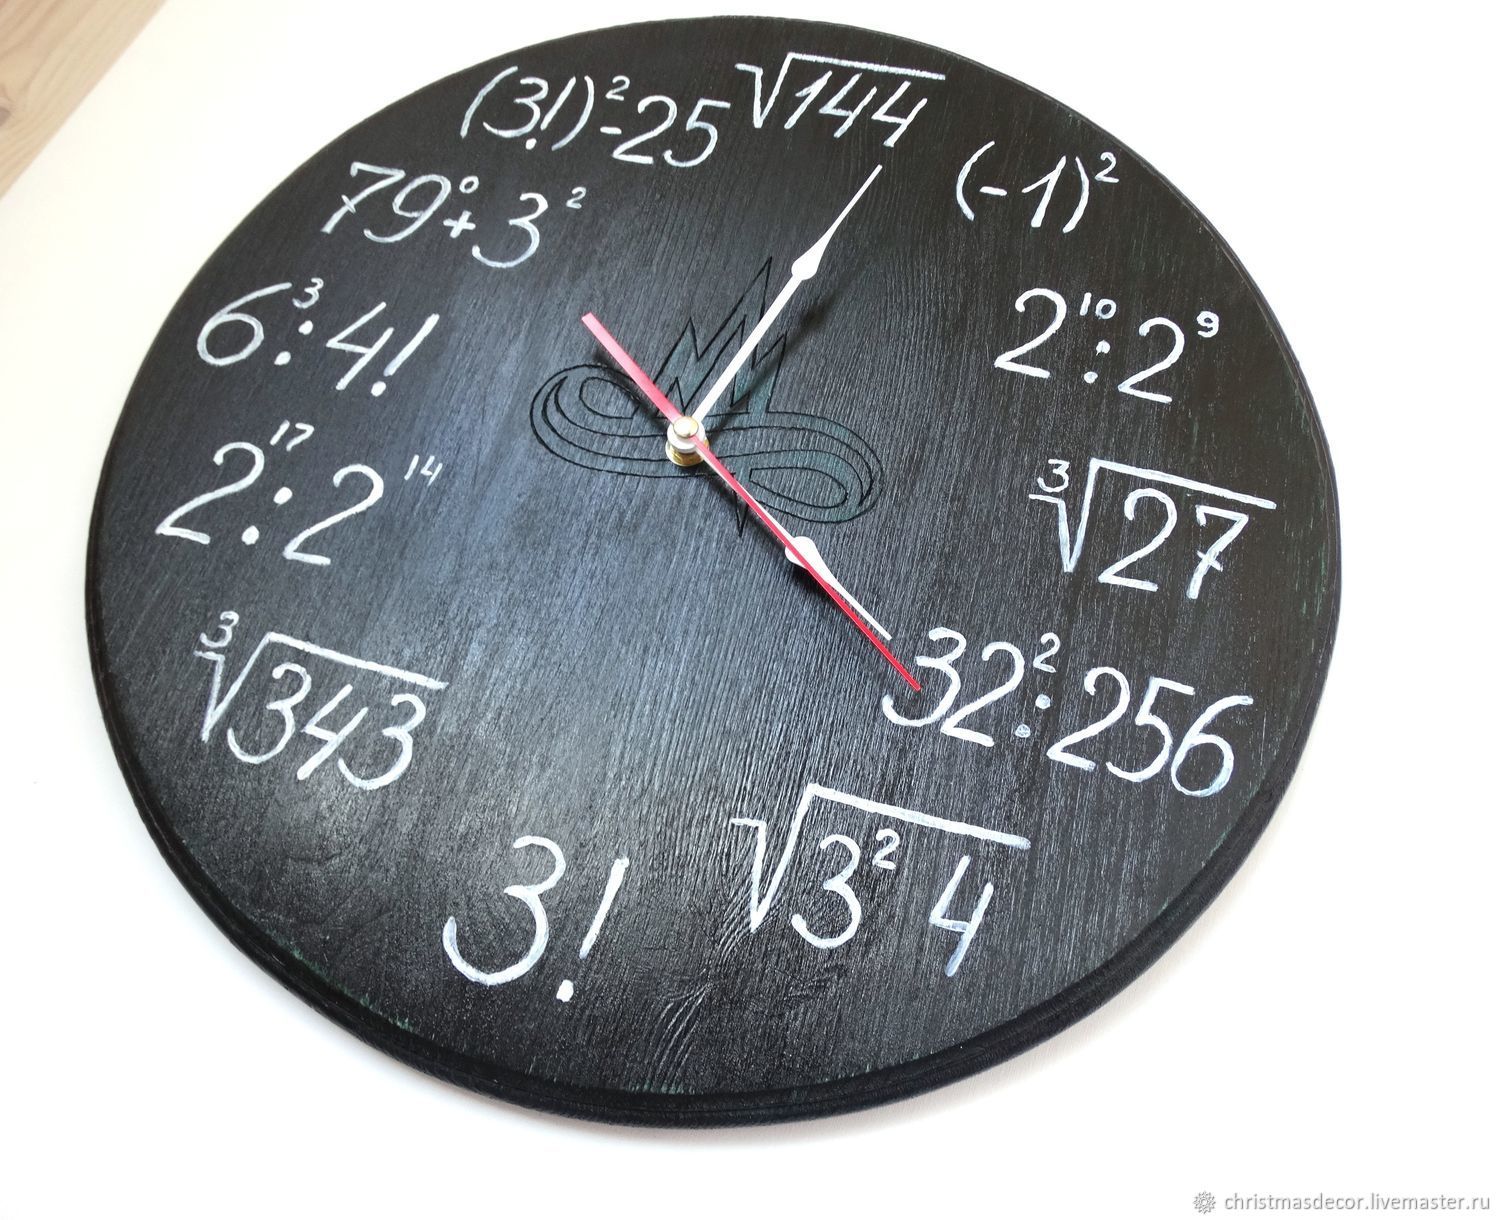 Часы учителю математики. Подарок учителю математики. Часы учителю. Математические часы настенные. Сувениры учителю математики.